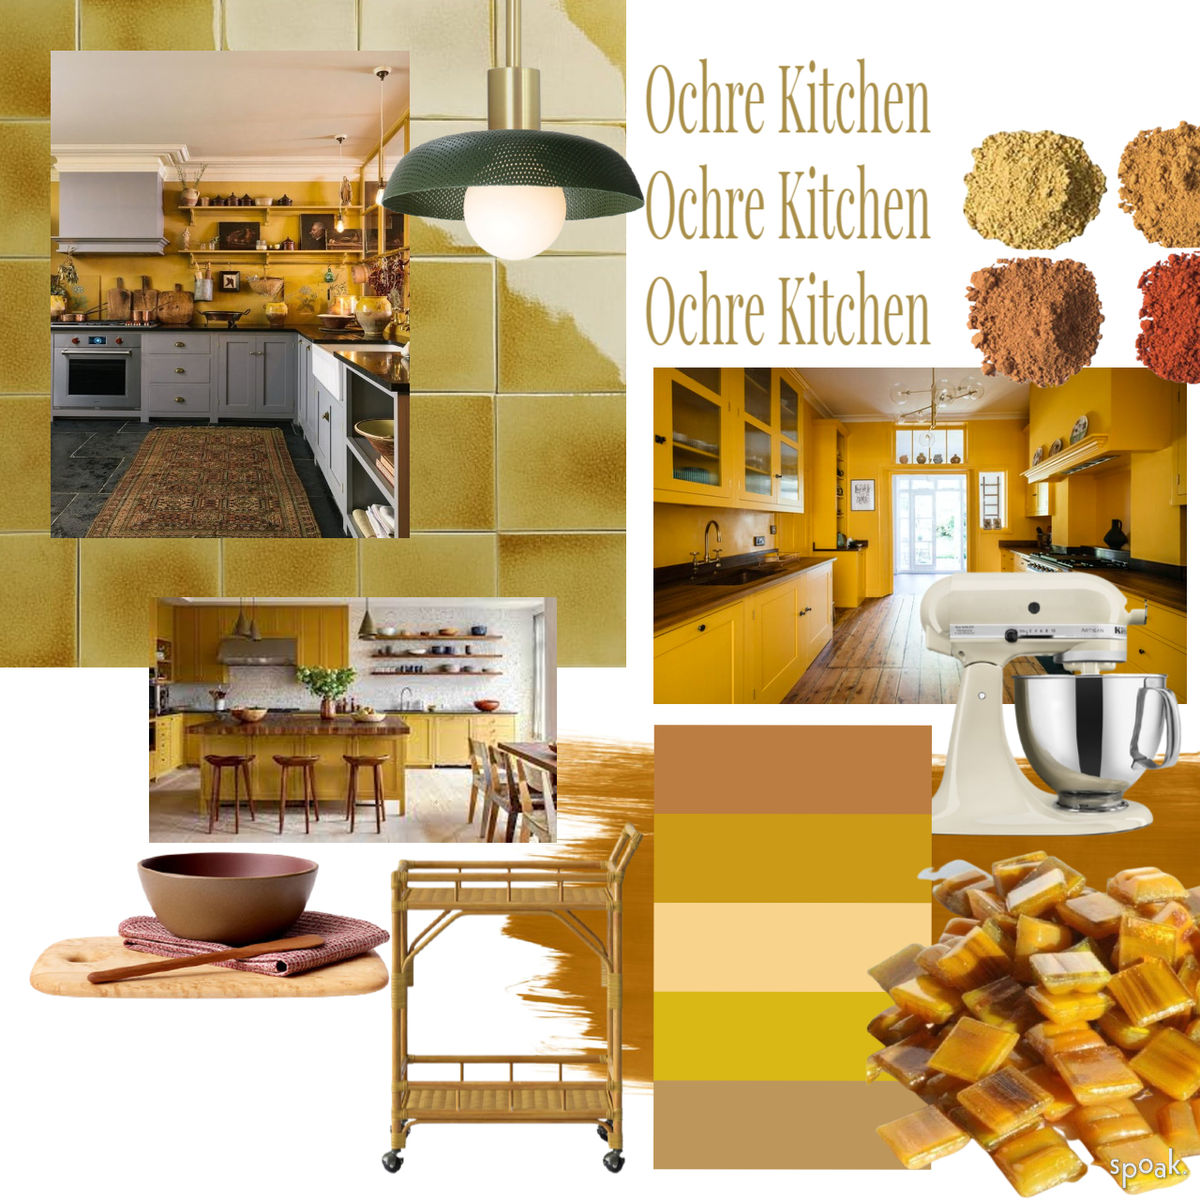 Ochre Kitchen designed by Katie Bowen